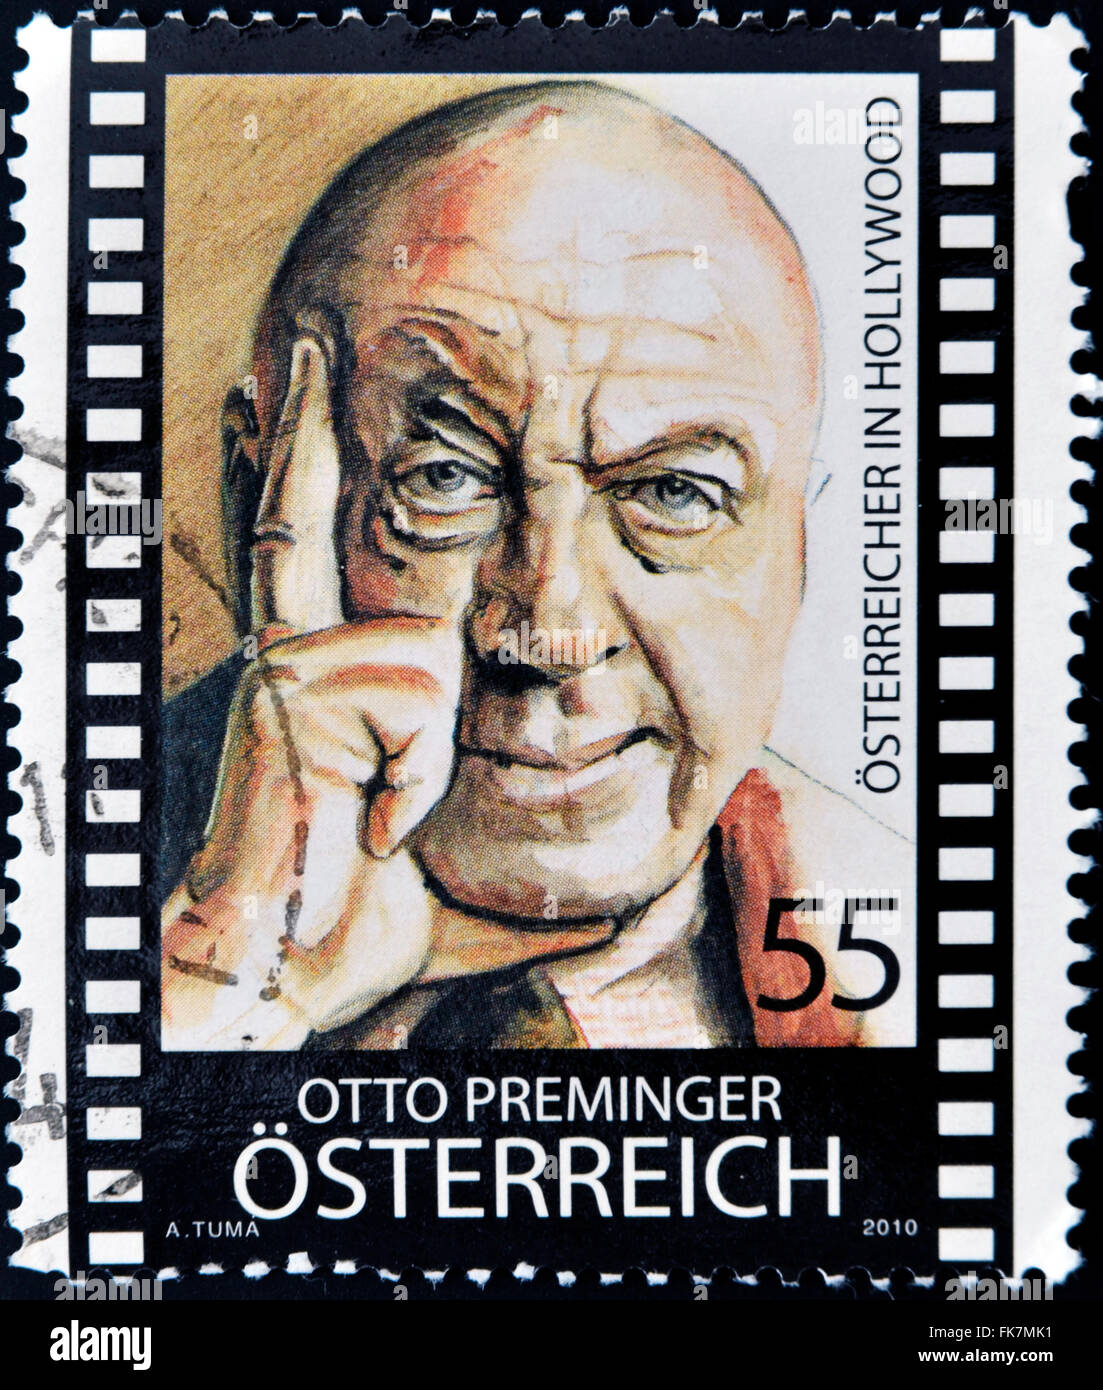 Vintage Marsan Stamp-o-mat Vend Pack Austrian International Stamps